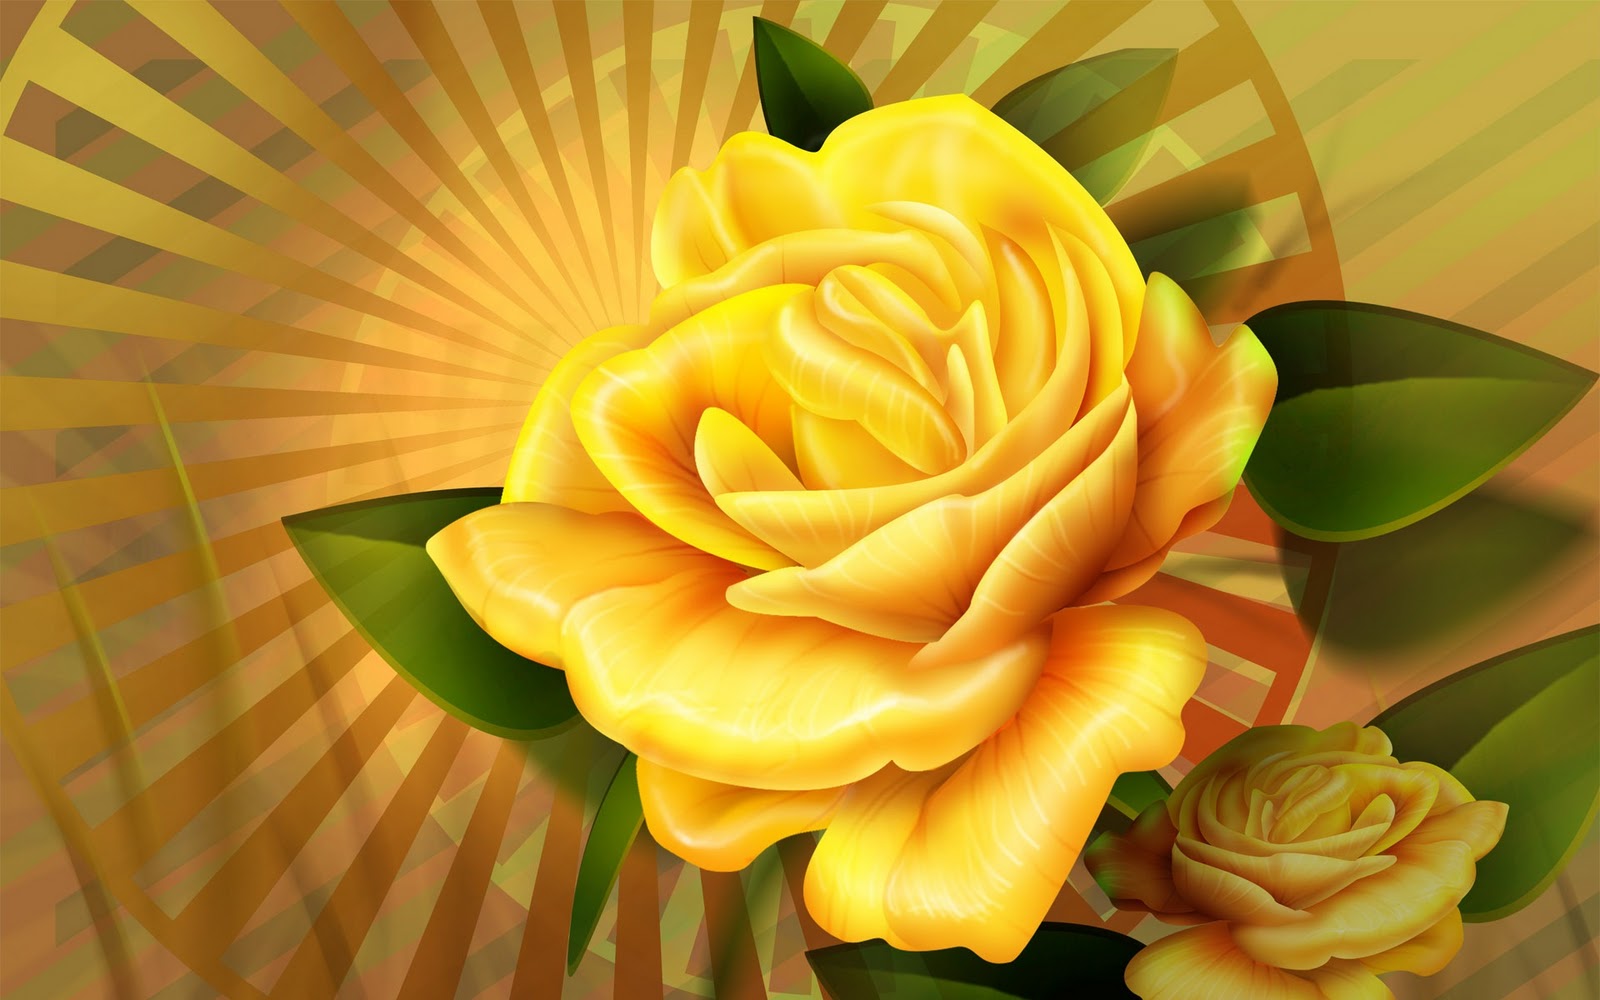   top desktop roses wallpapers hd rose wallpaper 51 3d yellow rosejpg